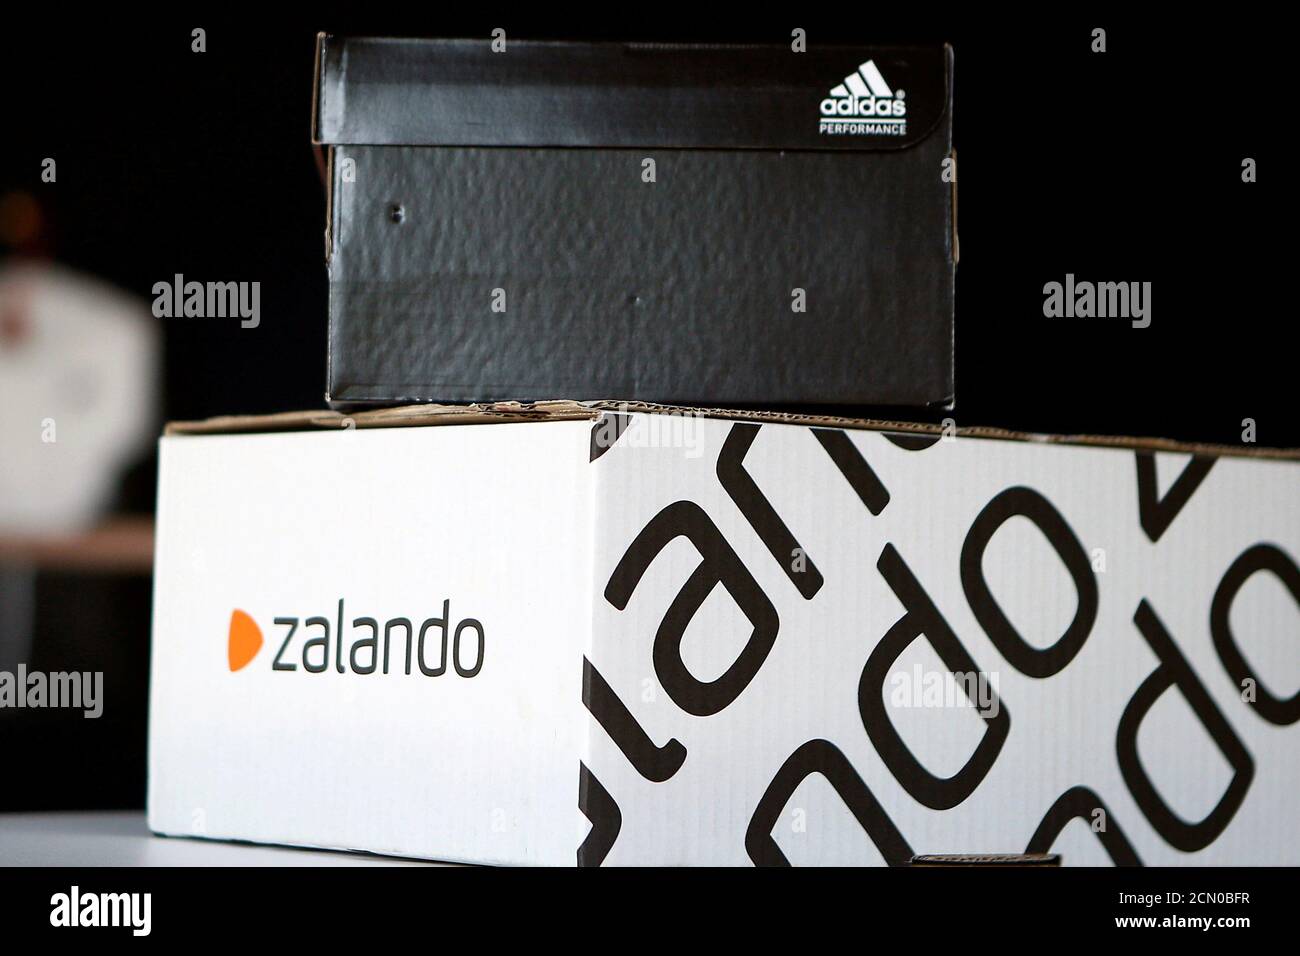 Une boîte à chaussures Adidas se dresse au-dessus d'une boîte en carton  Zalando sur une scène mise en scène à Berlin, Allemagne le 8 juin 2016.  REUTERS/Axel Schmidt/fichier photo FORFAIT GLOBAL BUSINESS